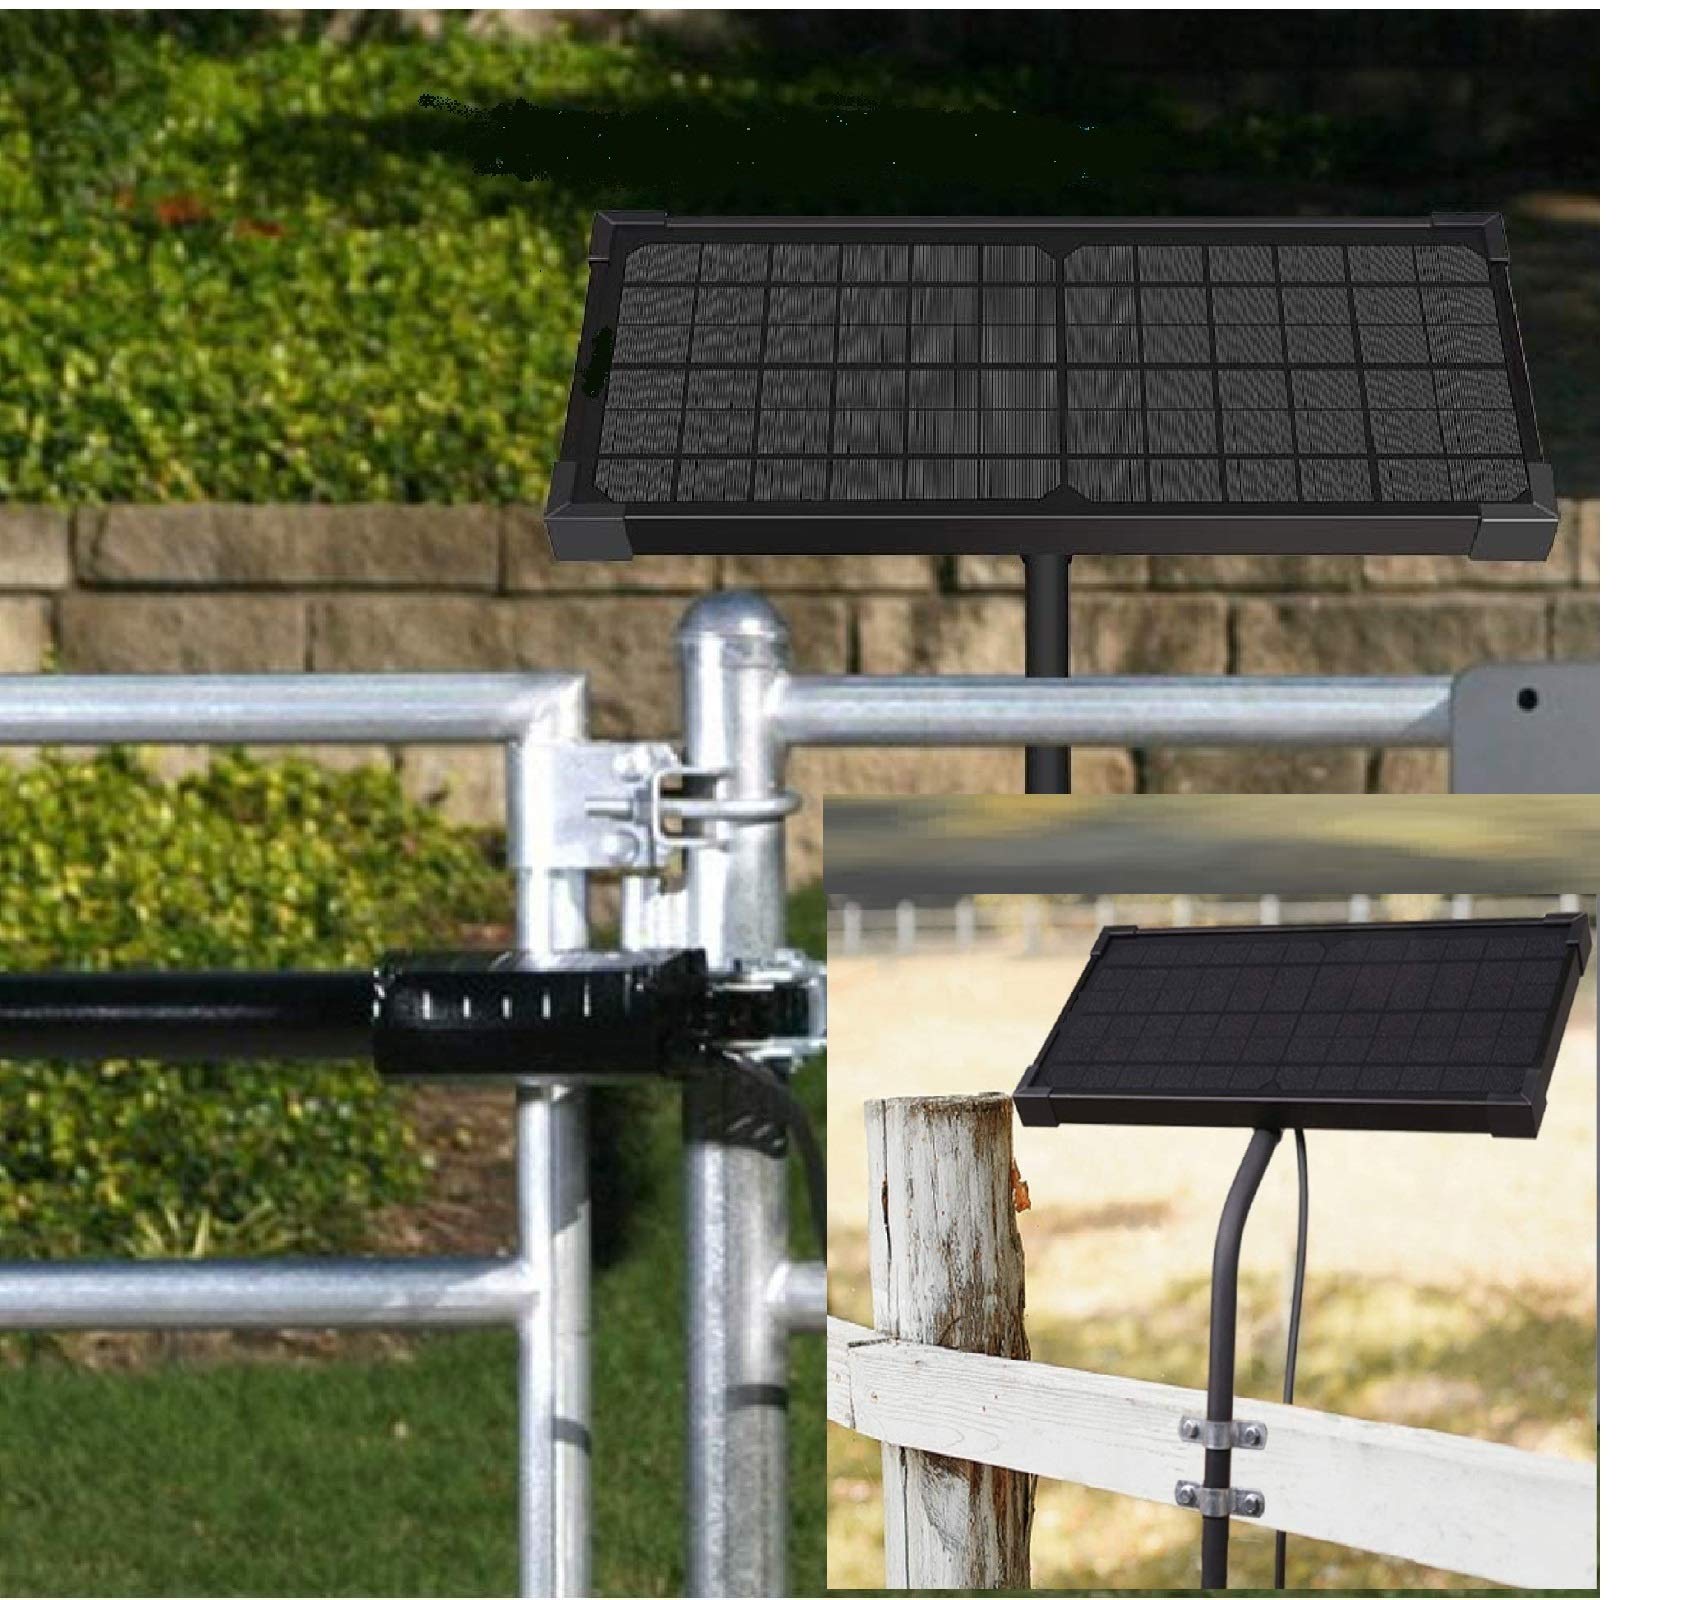 SolarEnz Solar Panel Tubular Mounting Brackets Solar Panel Mounting Pole Support Solar Panels from 5W to 40W